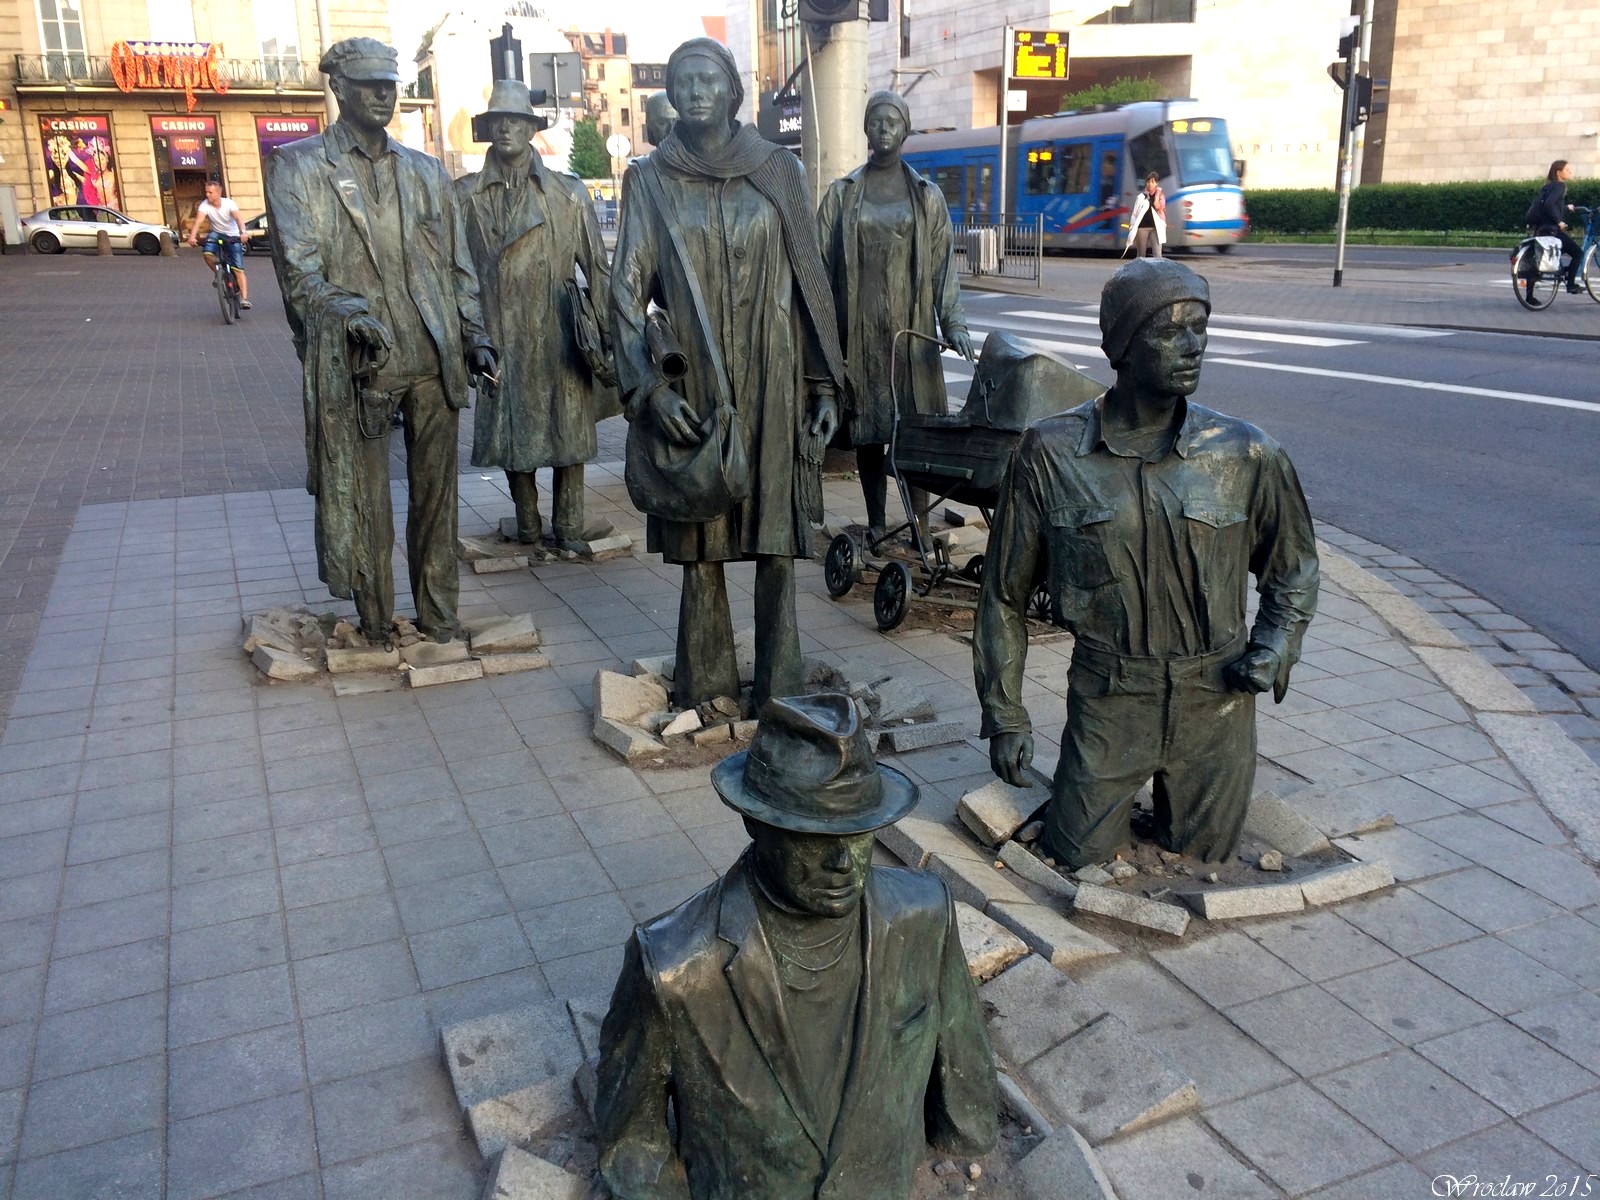 Pomnik Anonimowego Przechodnia we Wrocławiu, Poland